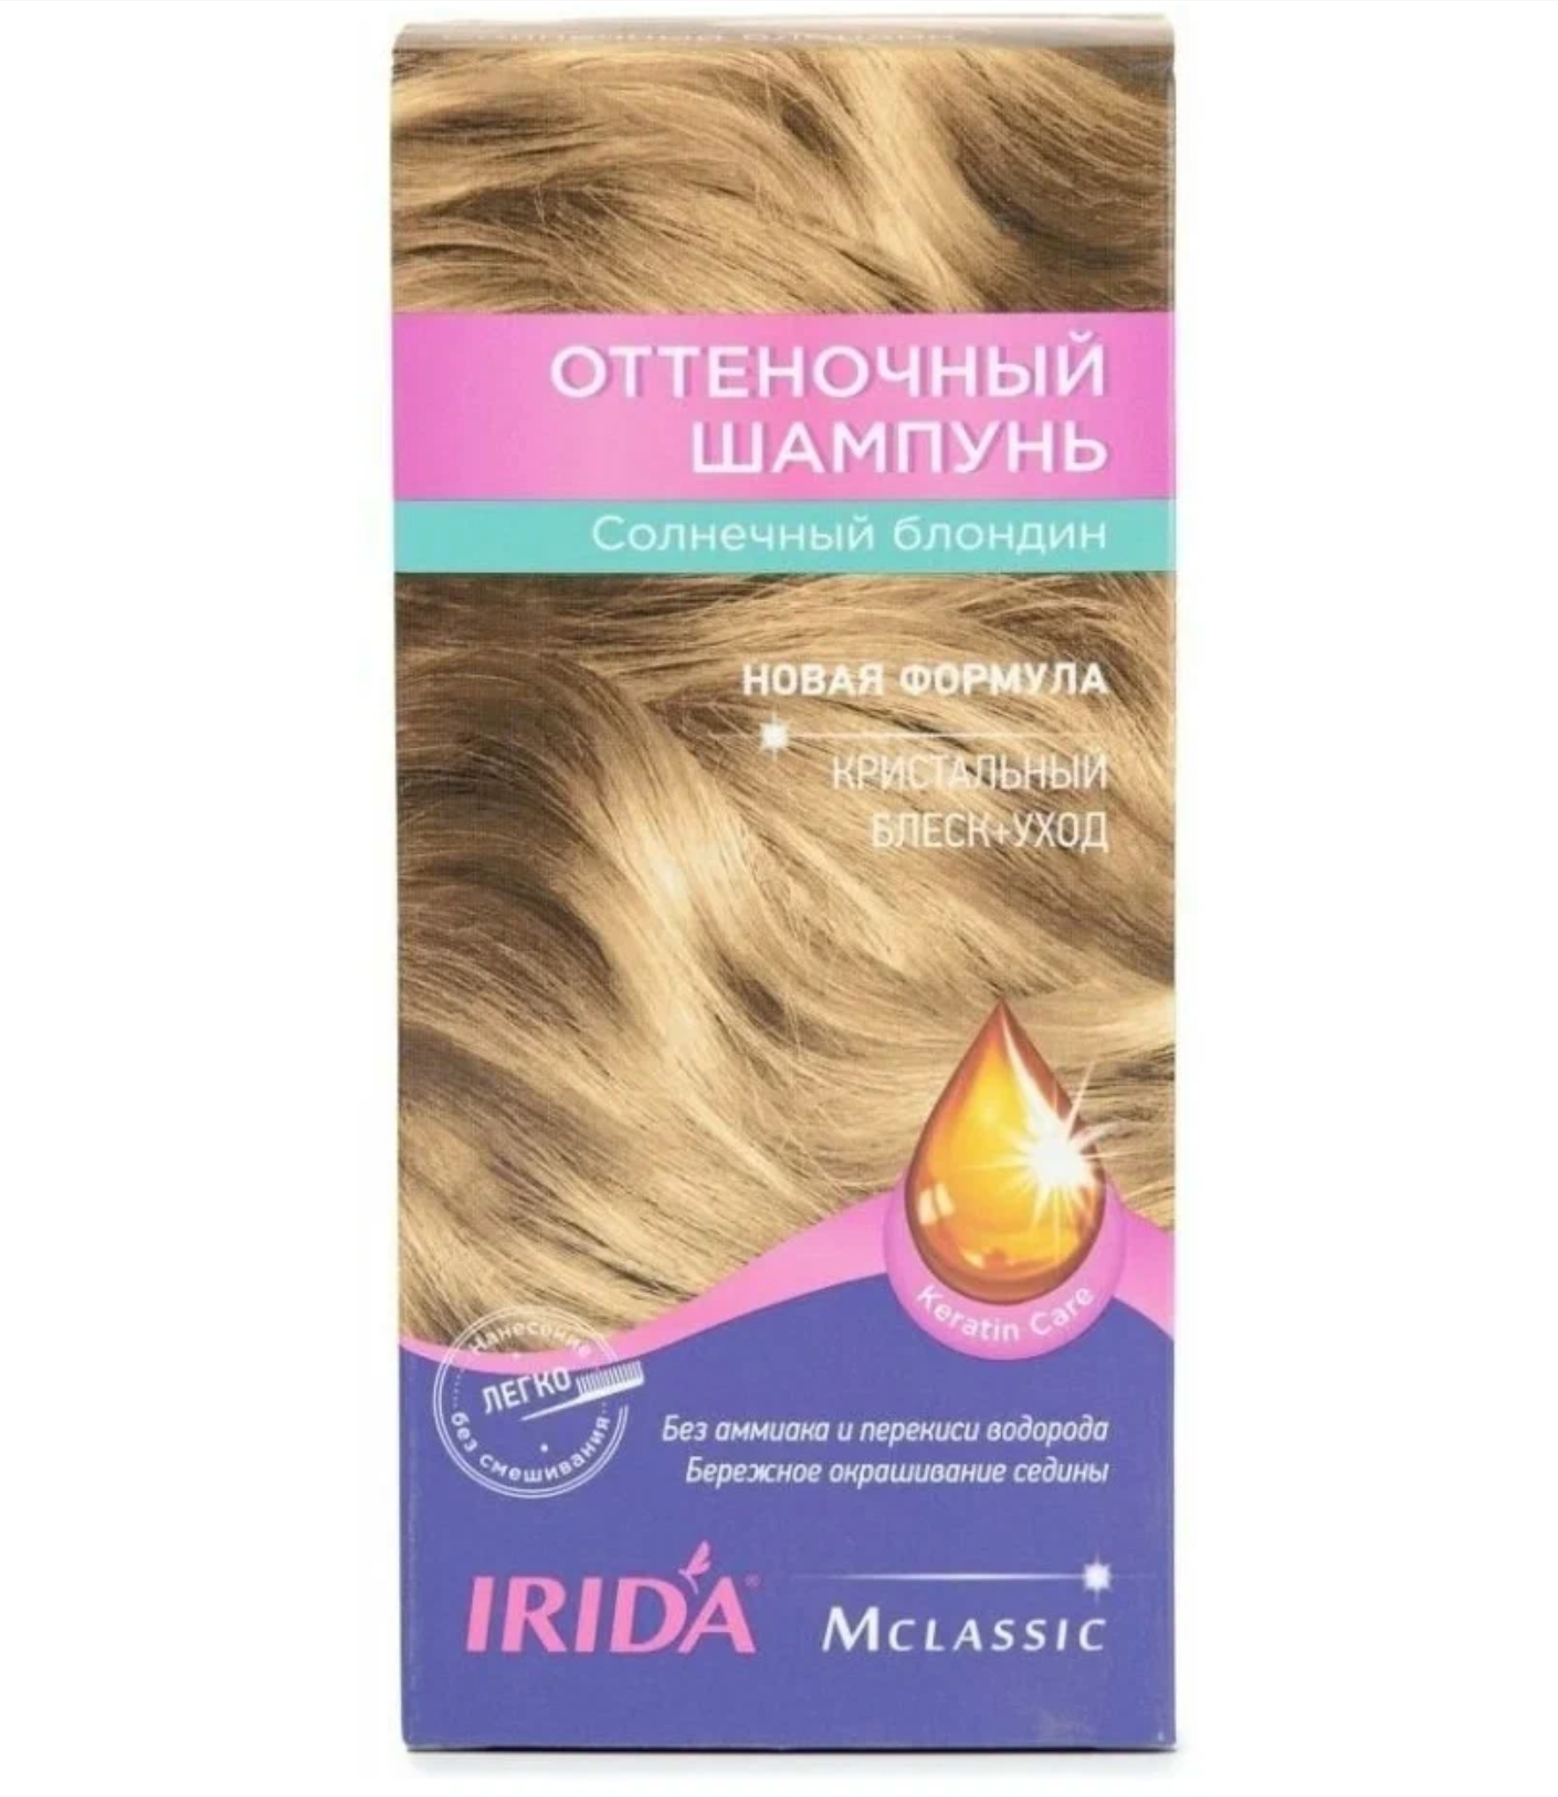 Ирида / Irida М Classic - Оттеночный шампунь для волос блеск-уход тон Солнечный блондин 75 мл